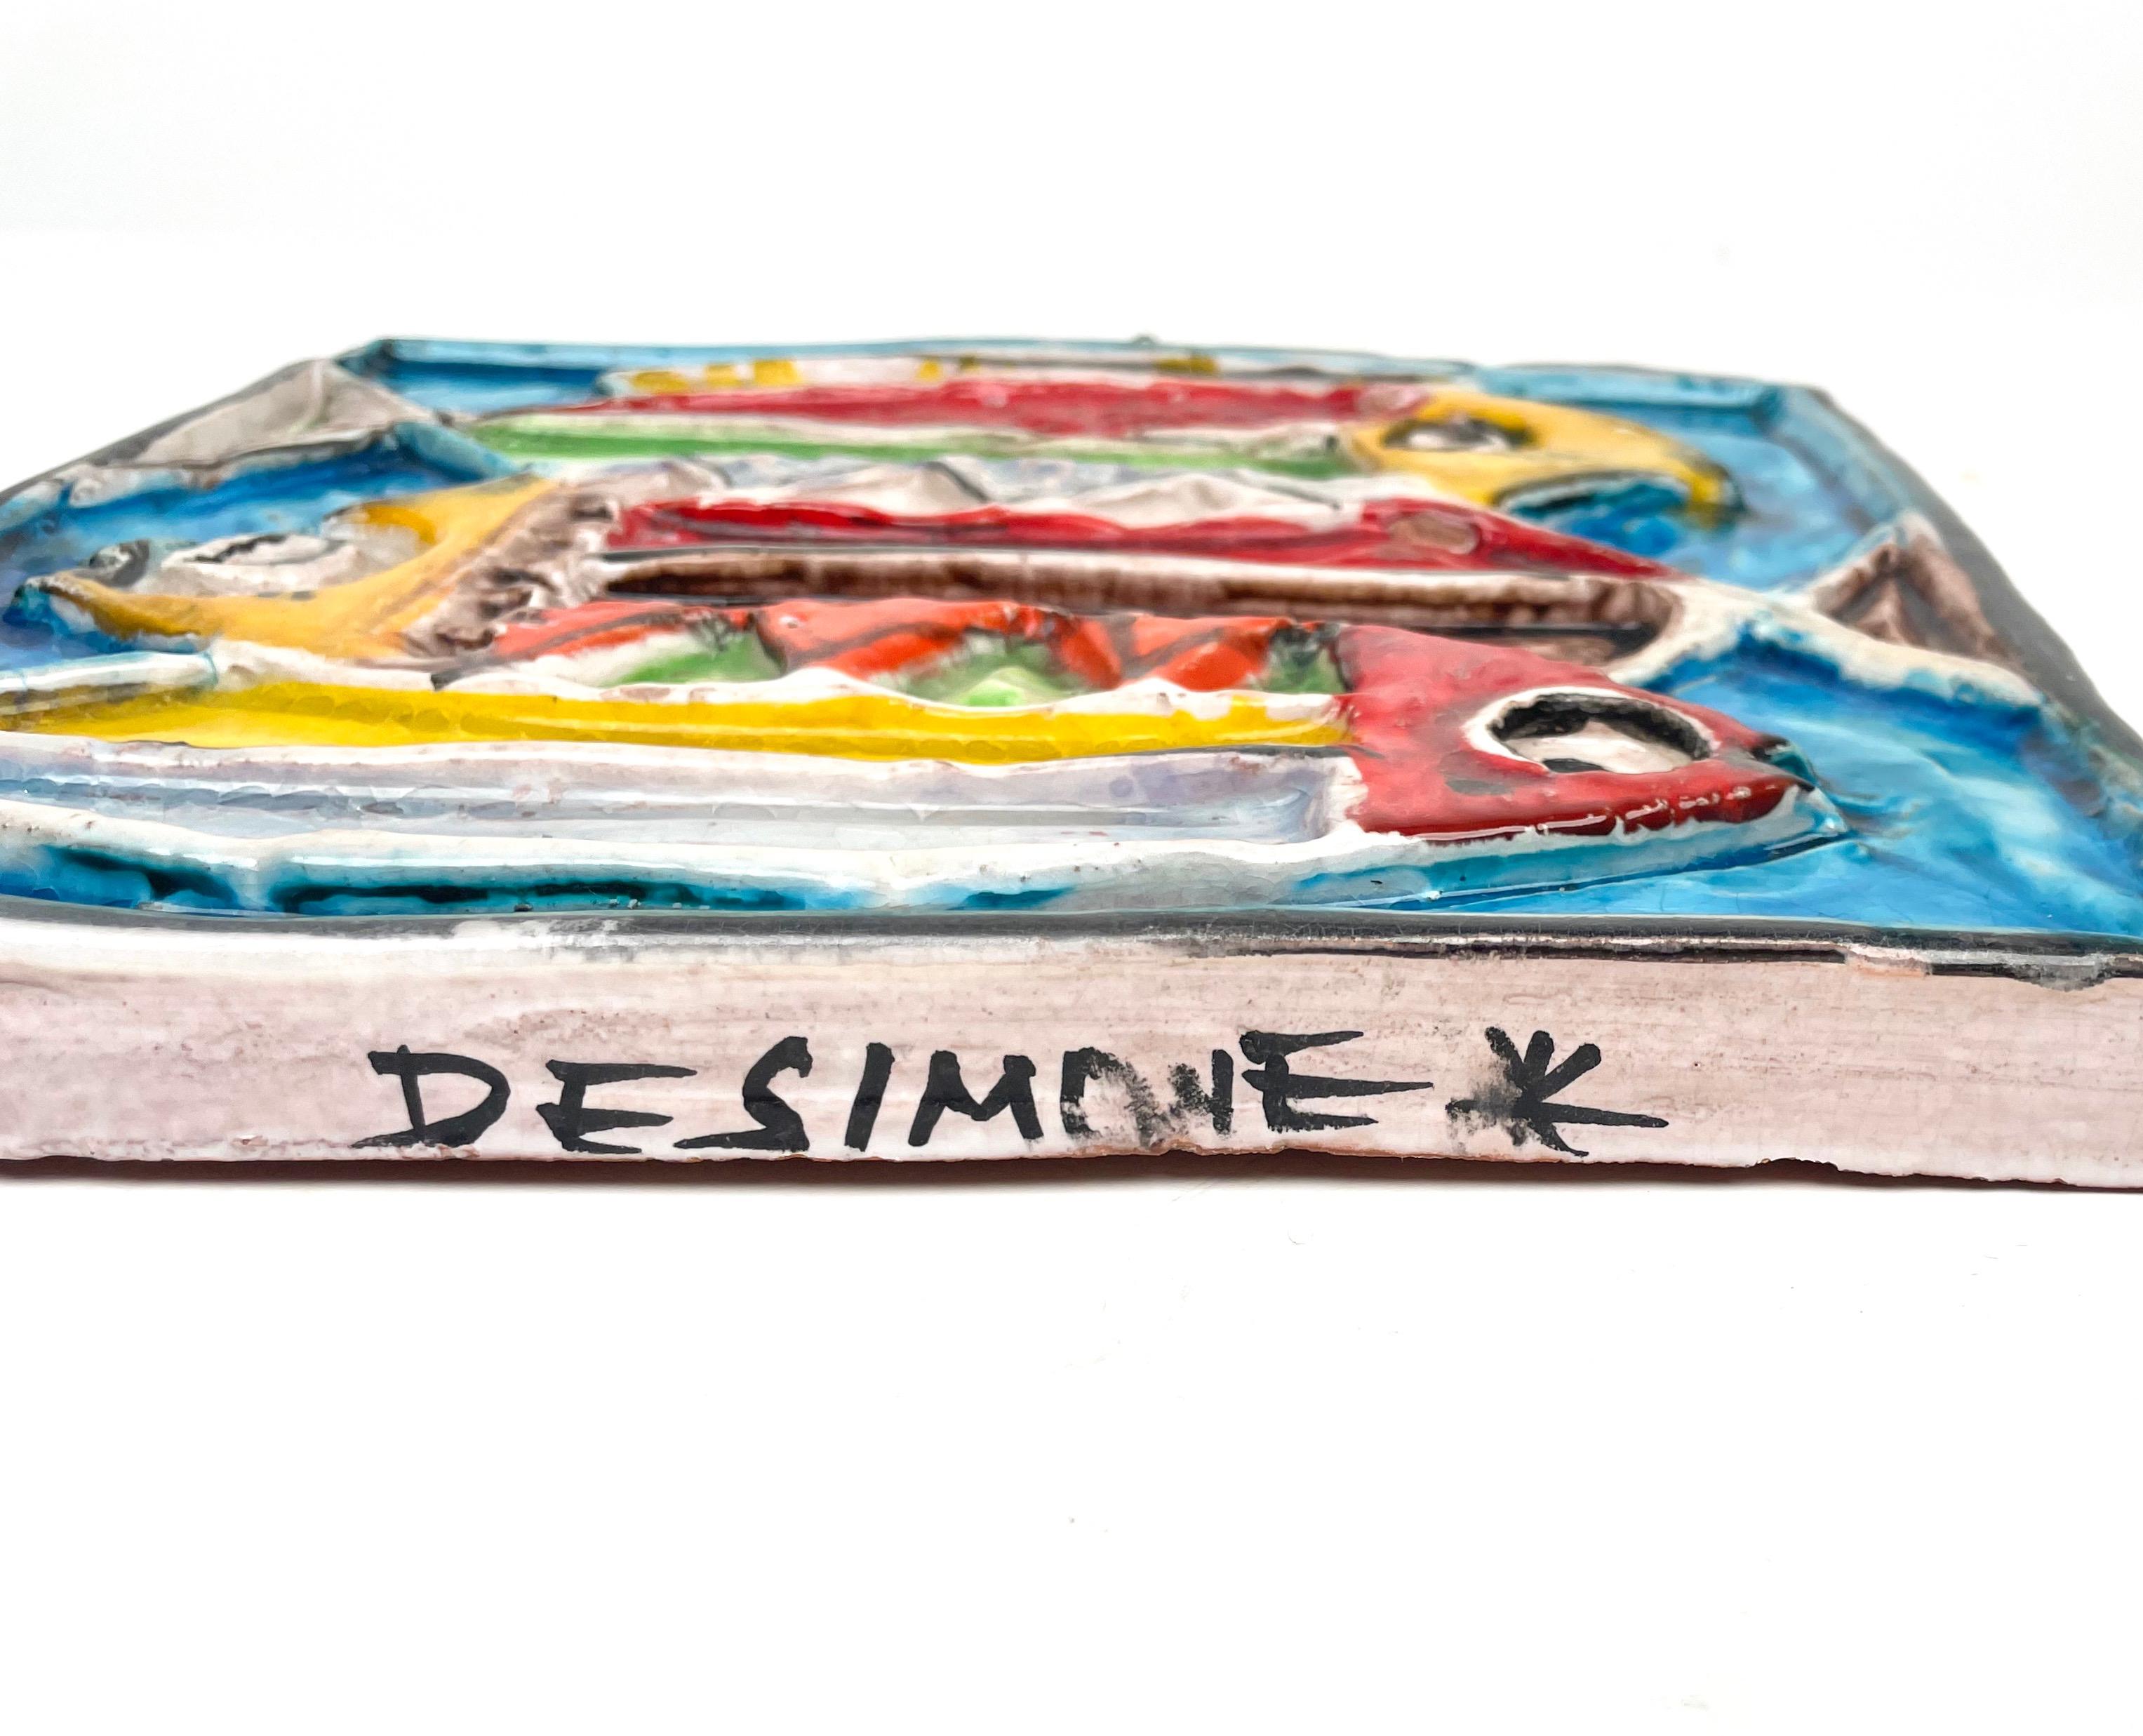 Giovanni de Simone Colored Ceramic Fish Squared Tile Plate, Italy 1960s For Sale 1